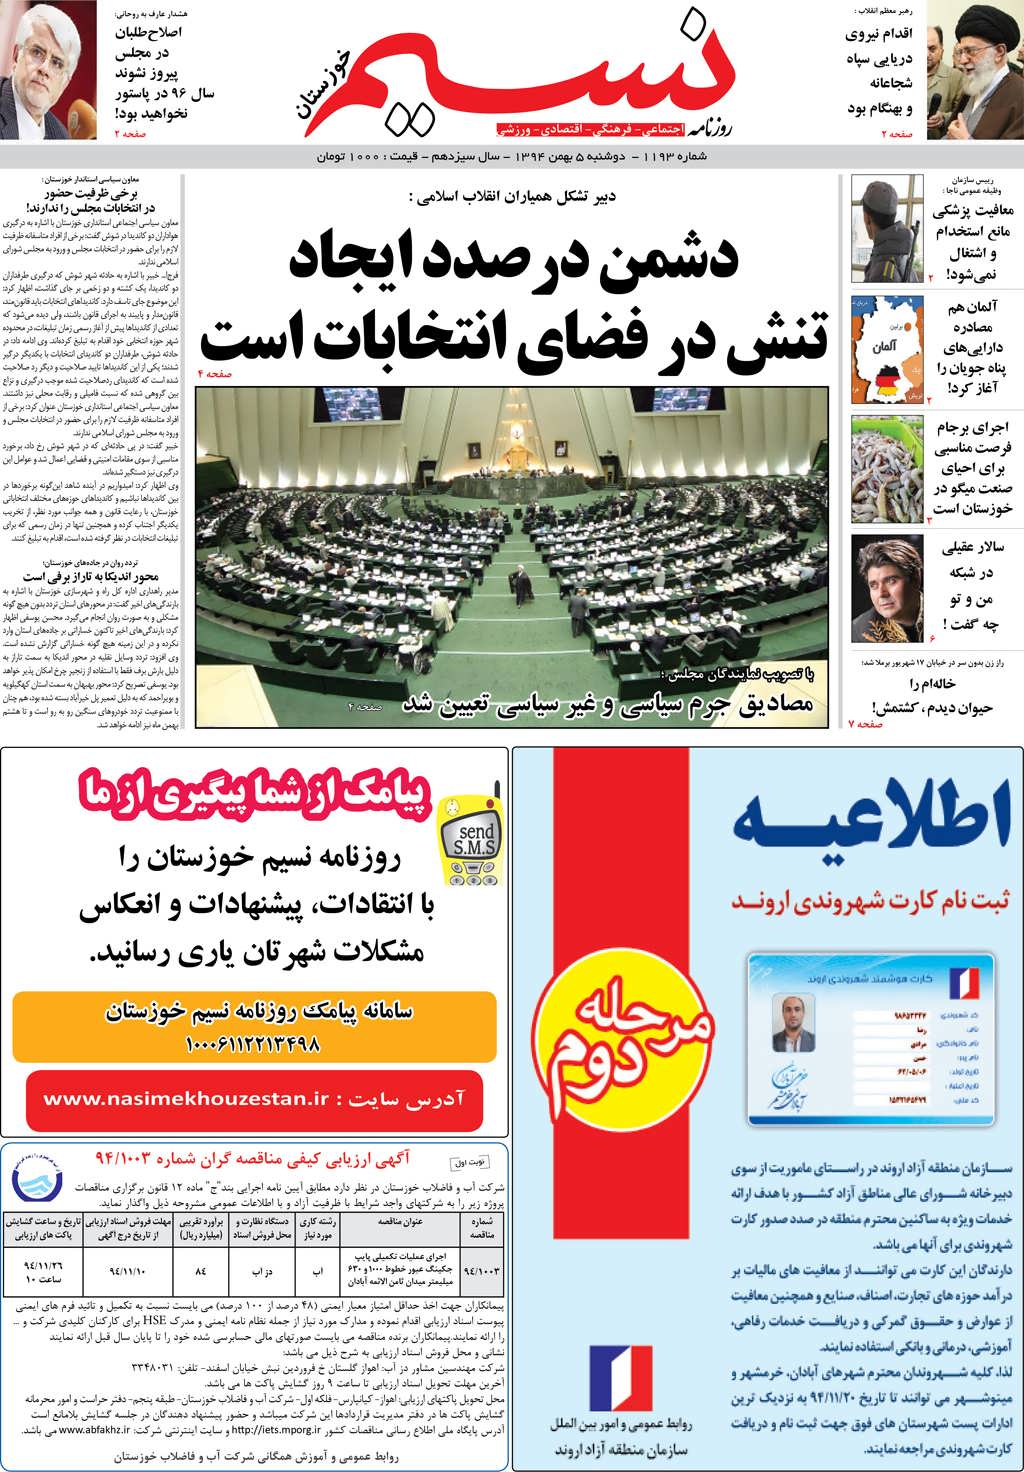 صفحه اصلی روزنامه نسیم شماره 1193